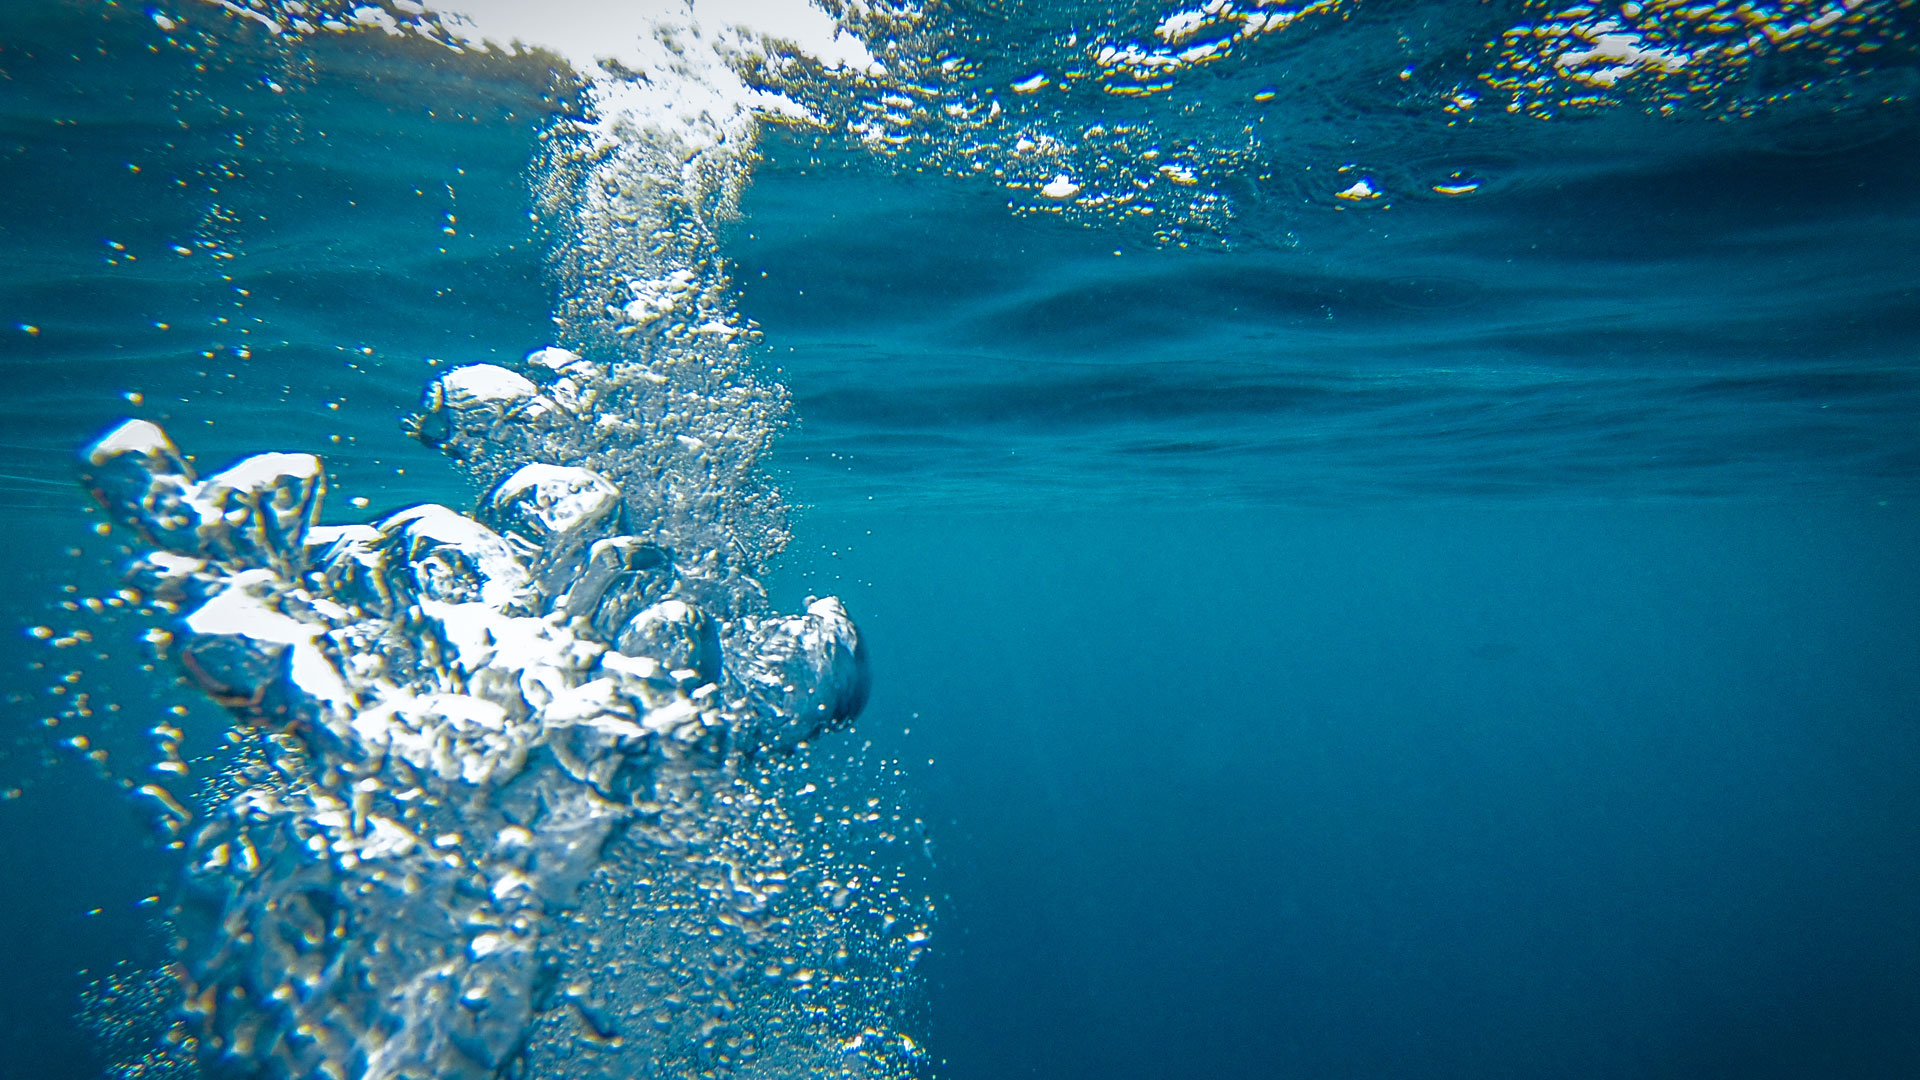 Según los científicos la disminución ocurre debido a la aparición de una capa superficial de agua de baja alcalinidad que dificulta la capacidad de los océanos para absorber CO2 (iStock)